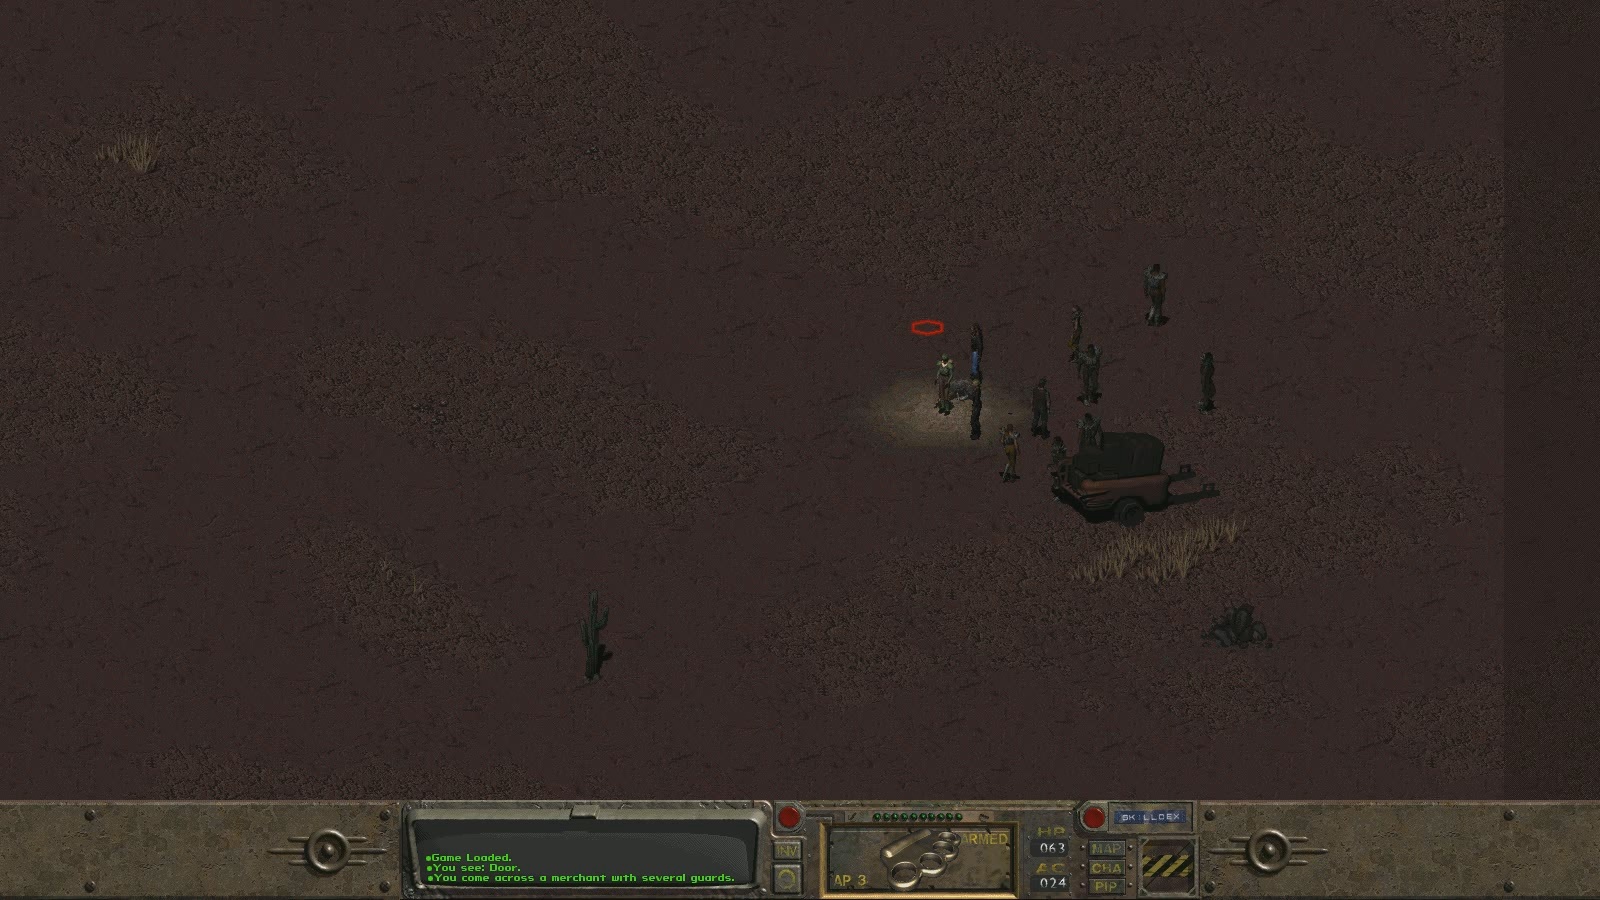 Fallout Screenshot 5